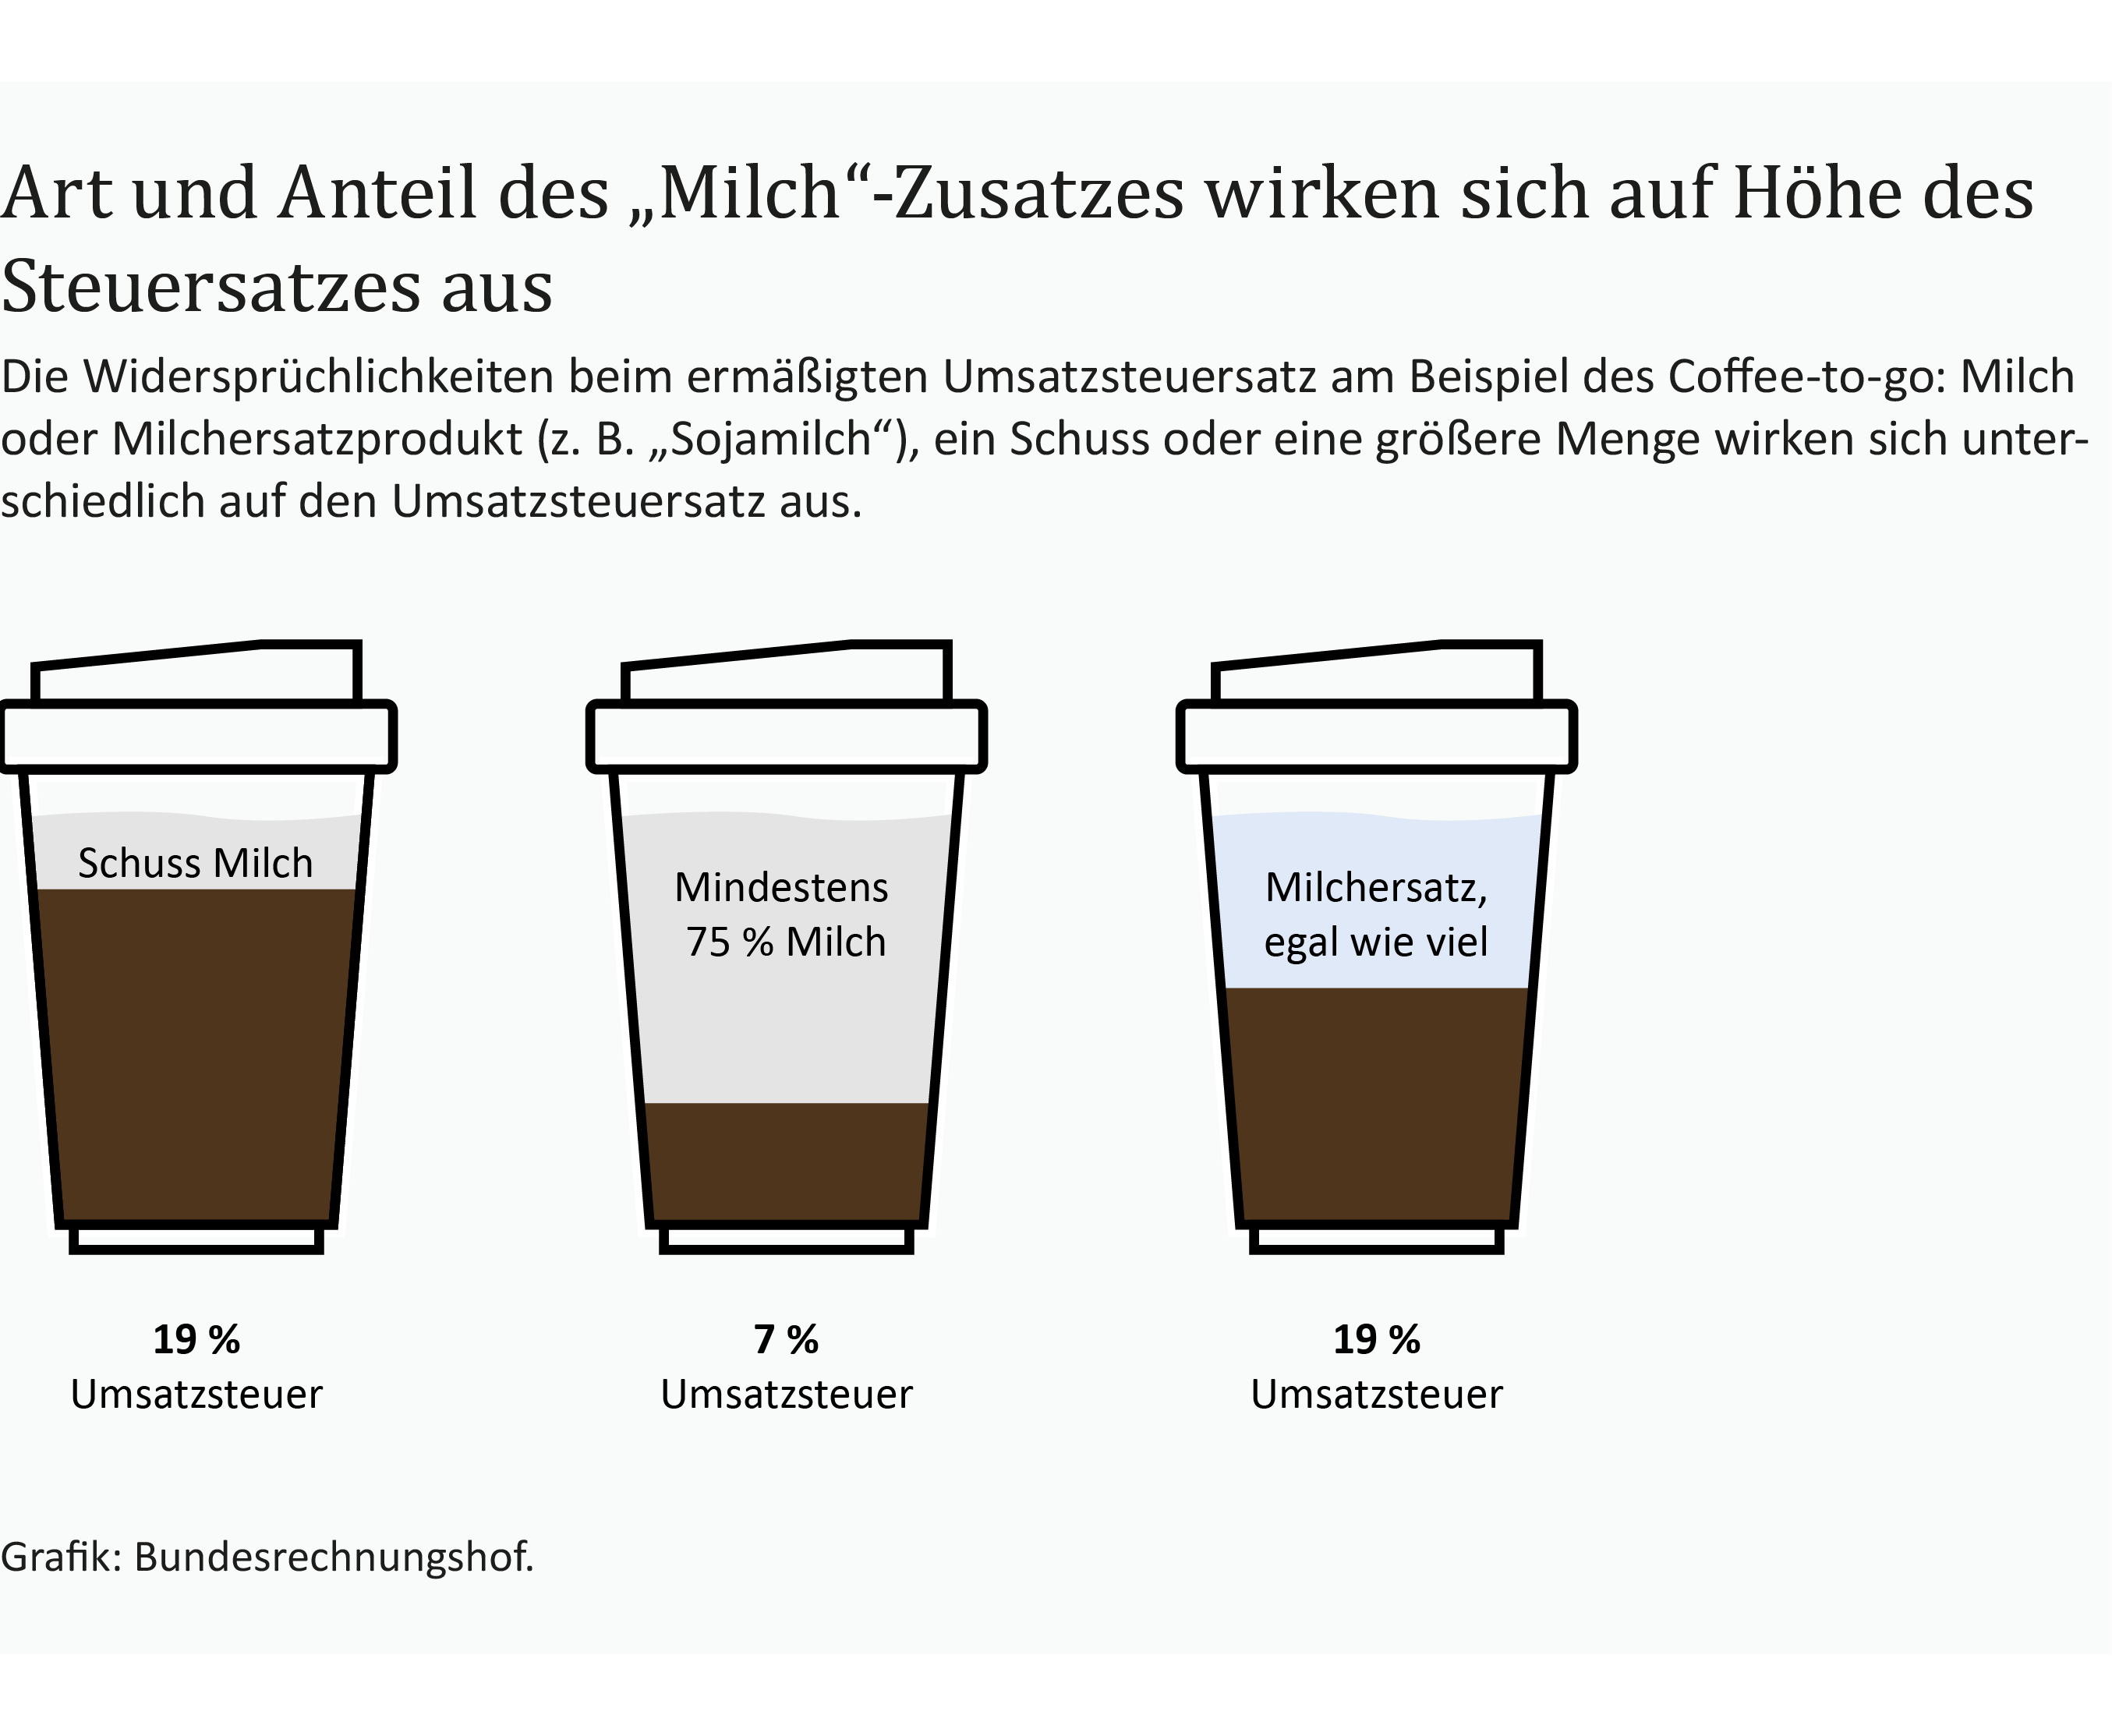 Eine Infografik zeigt die unterschiedlichen Umsatzsteuersätze bei Kaffee mit Milchzusätzen. 